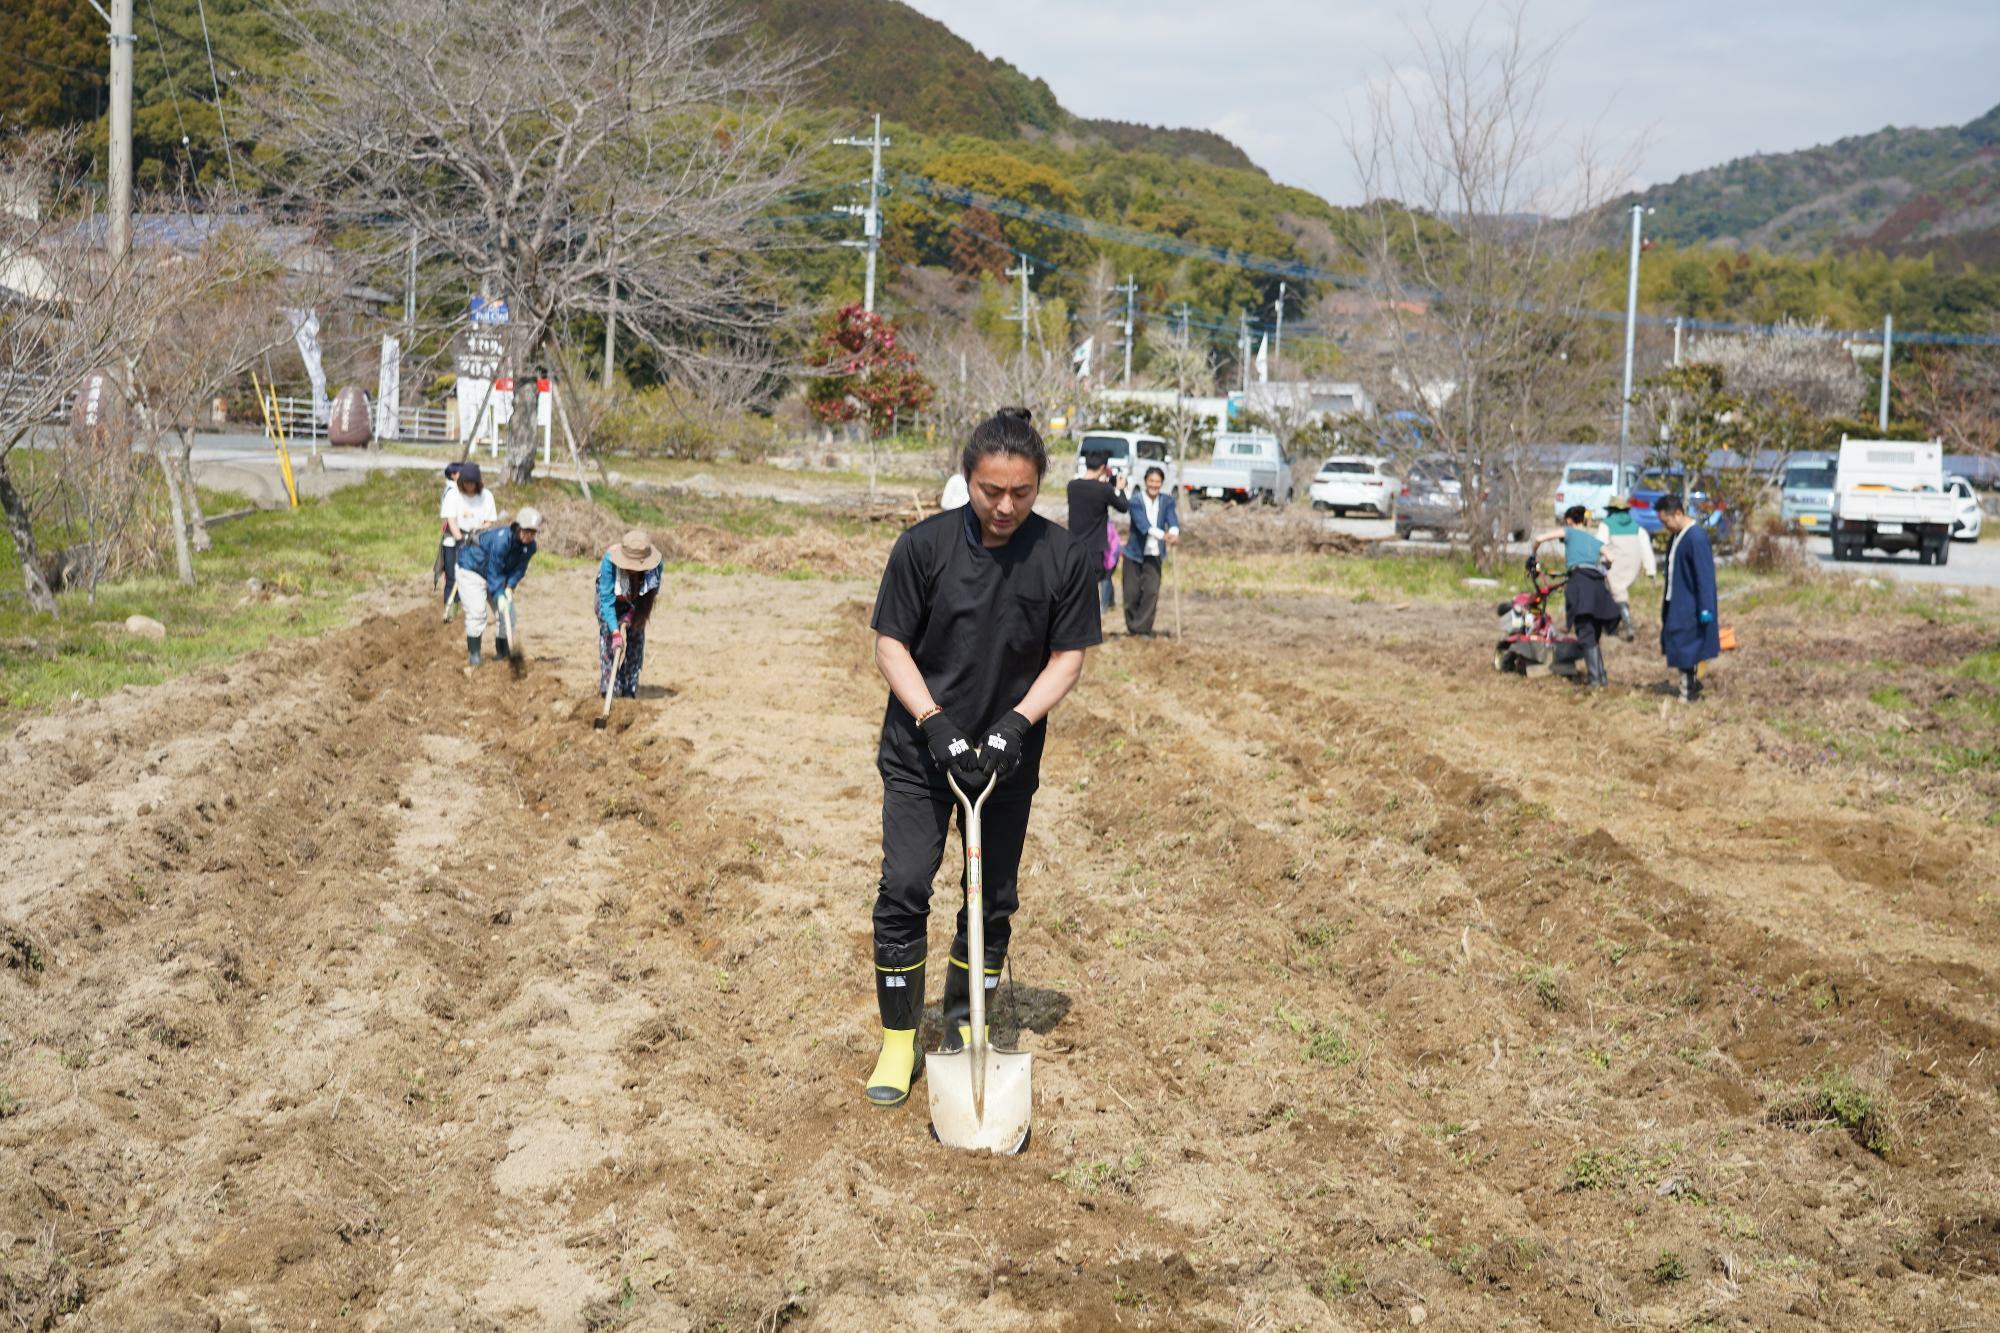 佐賀県・神崎にある畑では九州のメンバーと一緒に『菌ちゃん農法』を行っている